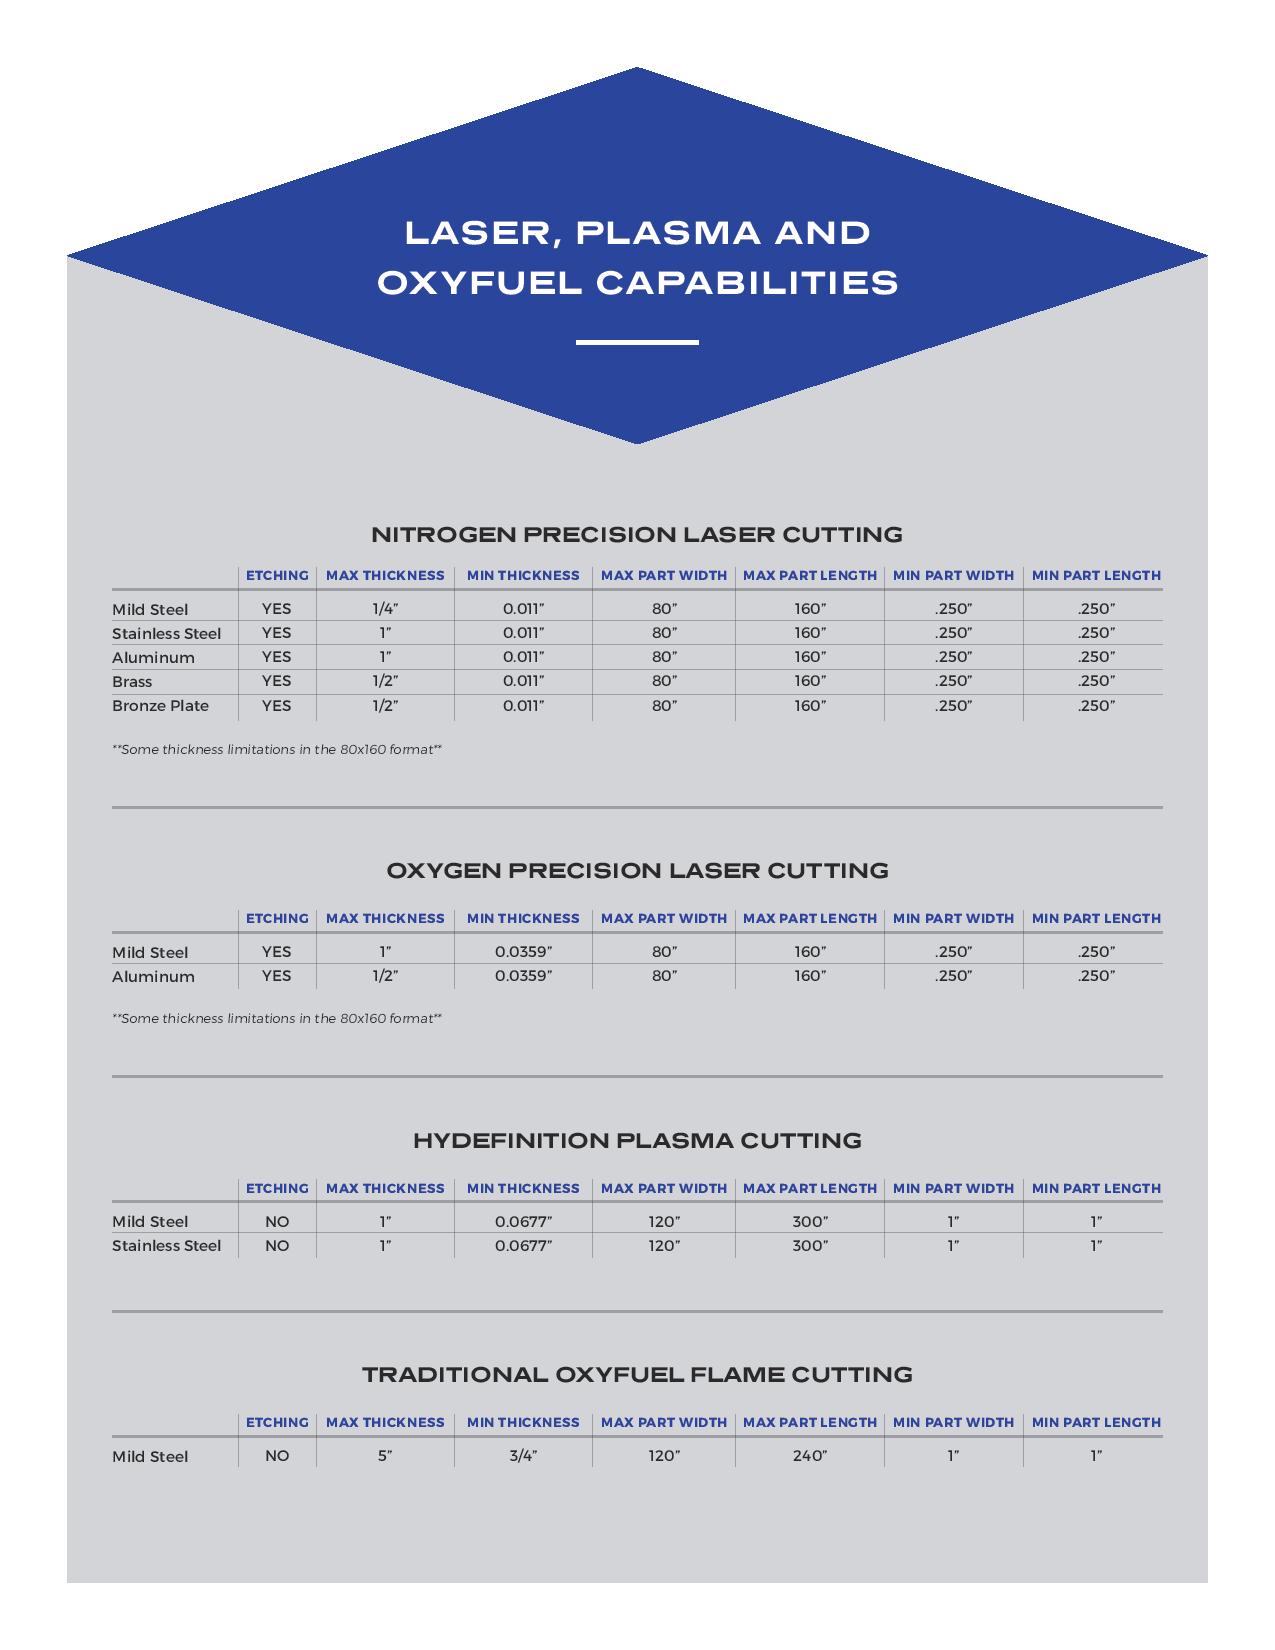 Steel-Mfg-Laser Cutting page 2